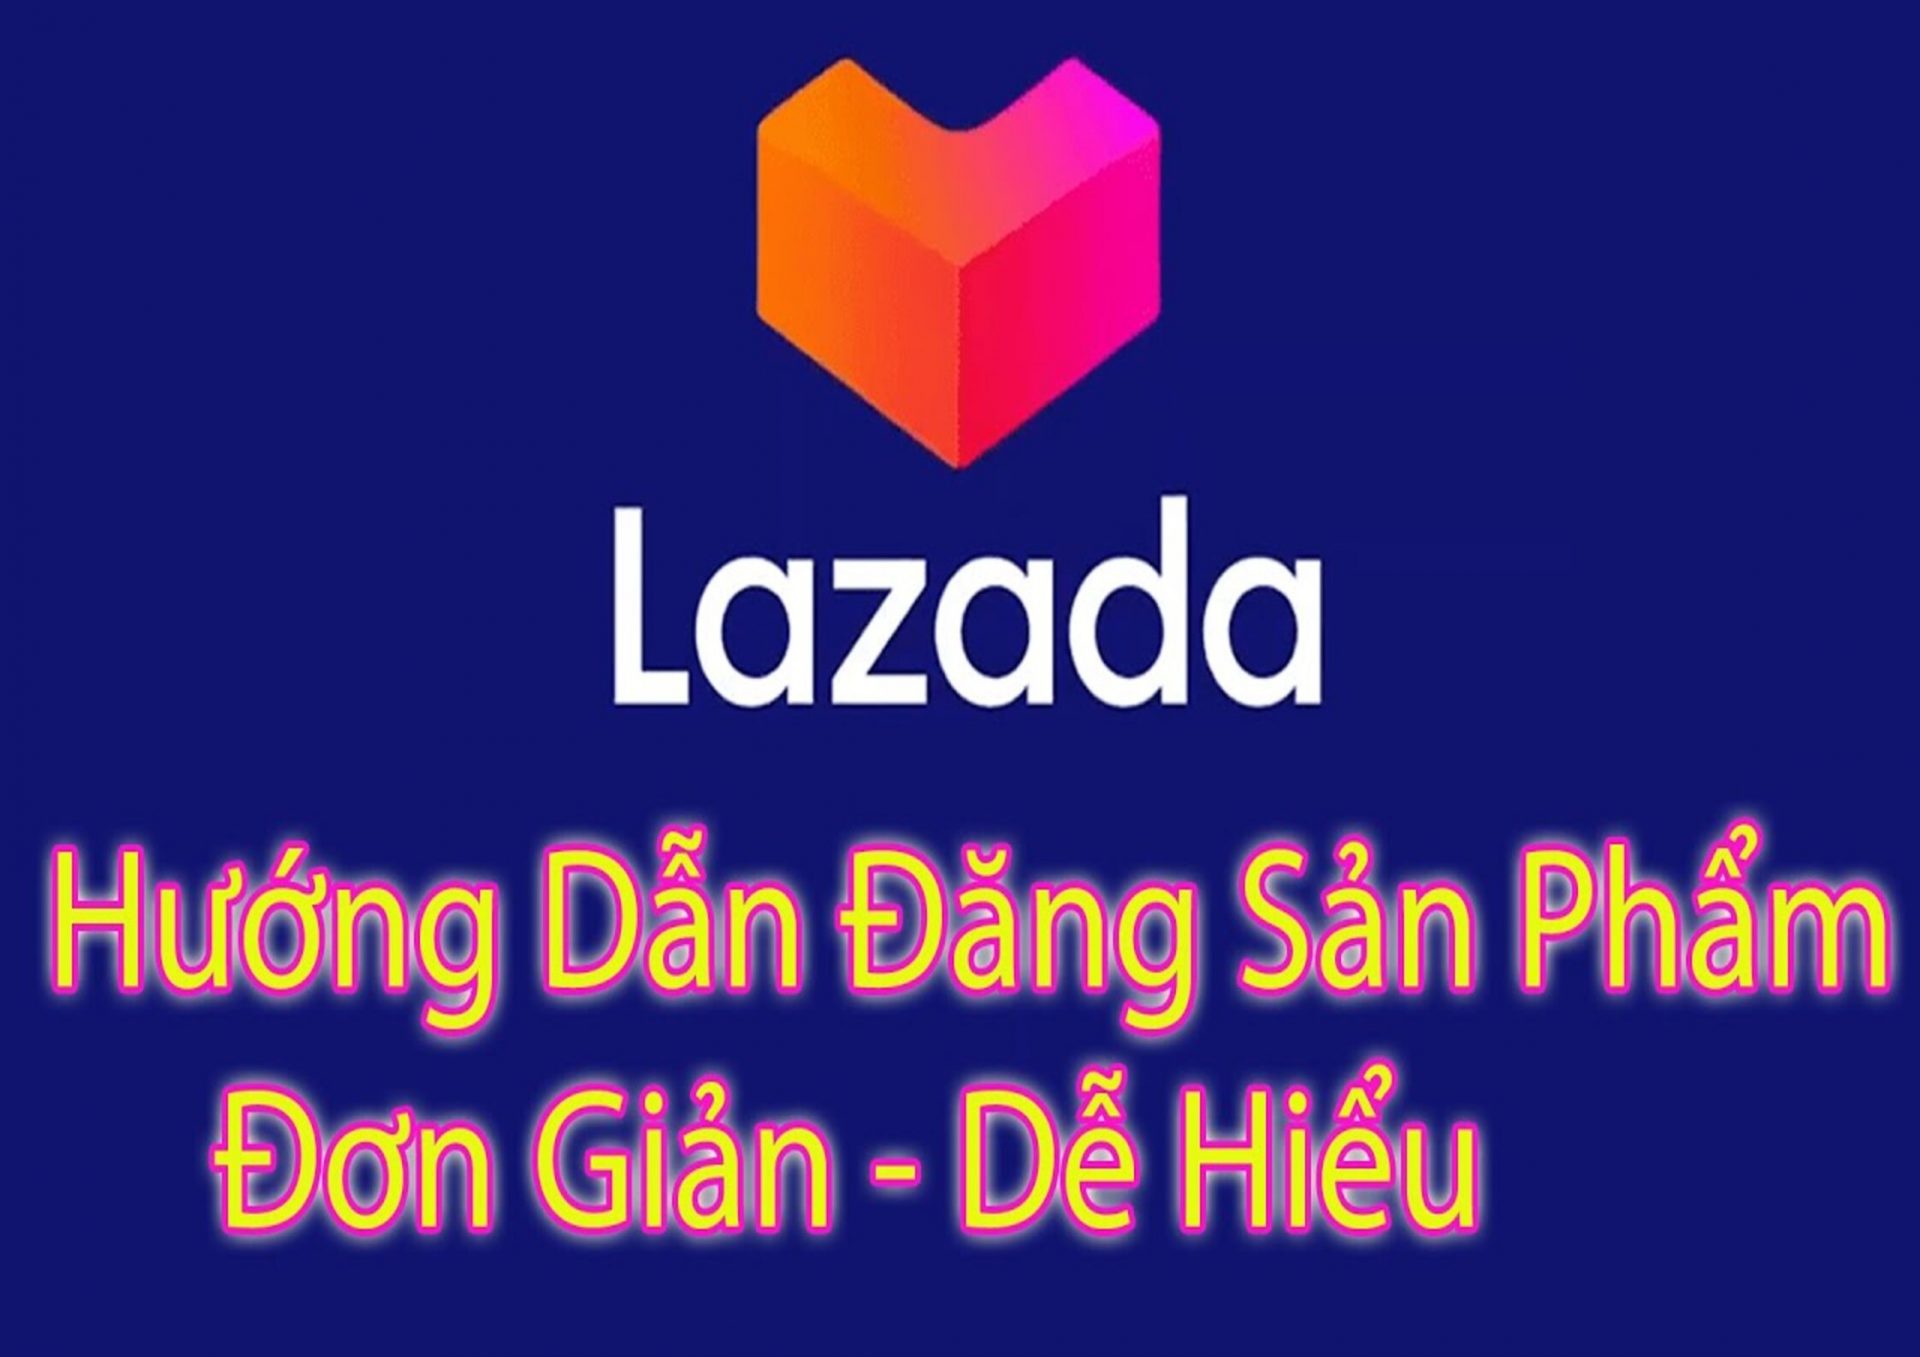 hướng dẫn đăng sản phẩm lên lazada